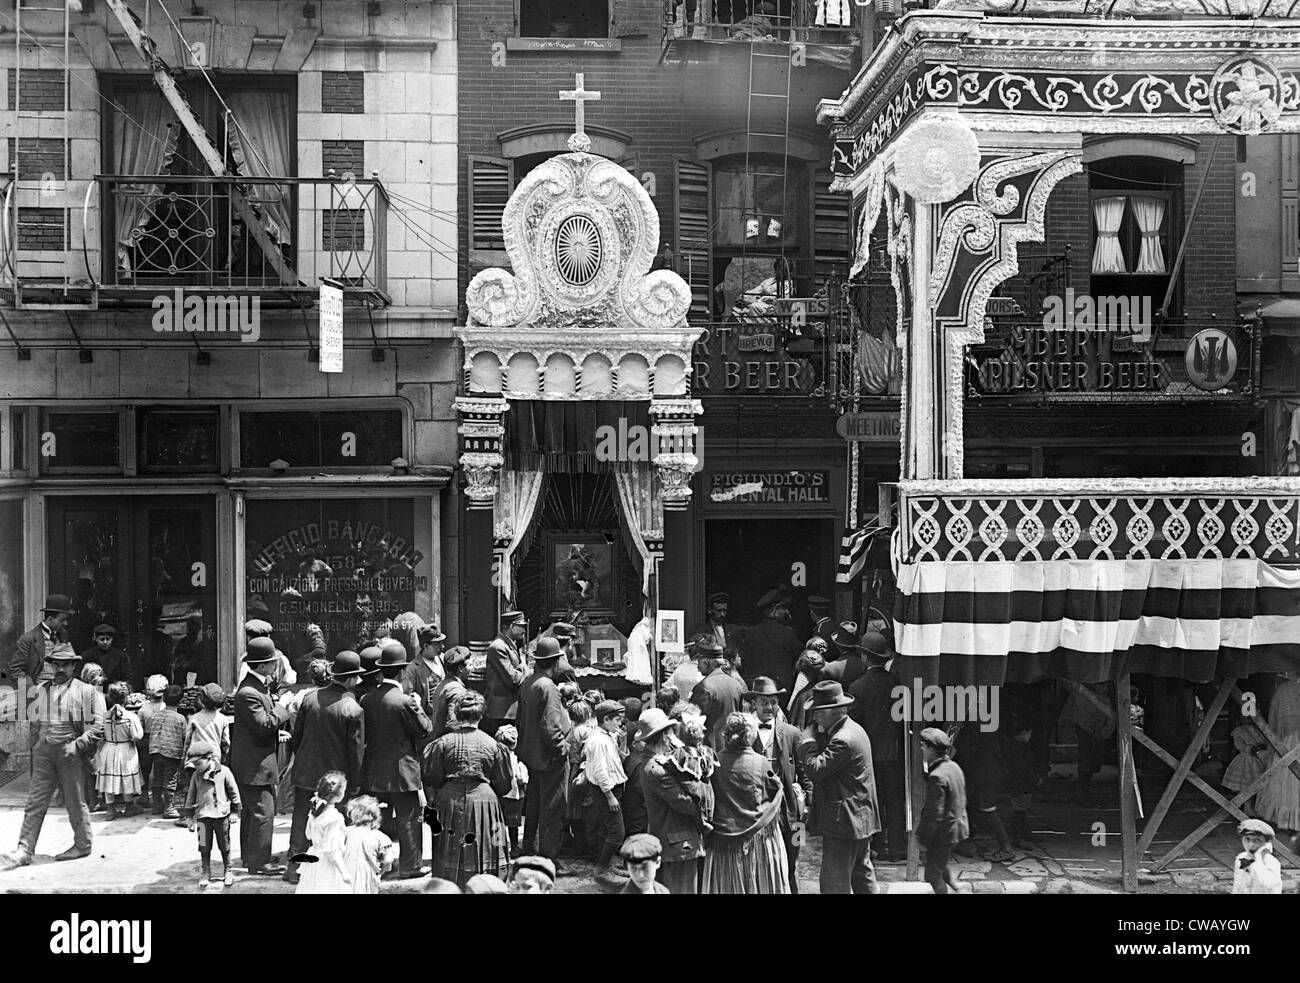 Little Italy, Street altare della Madonna di aiutare, Mott St., New York, 1908 Foto Stock